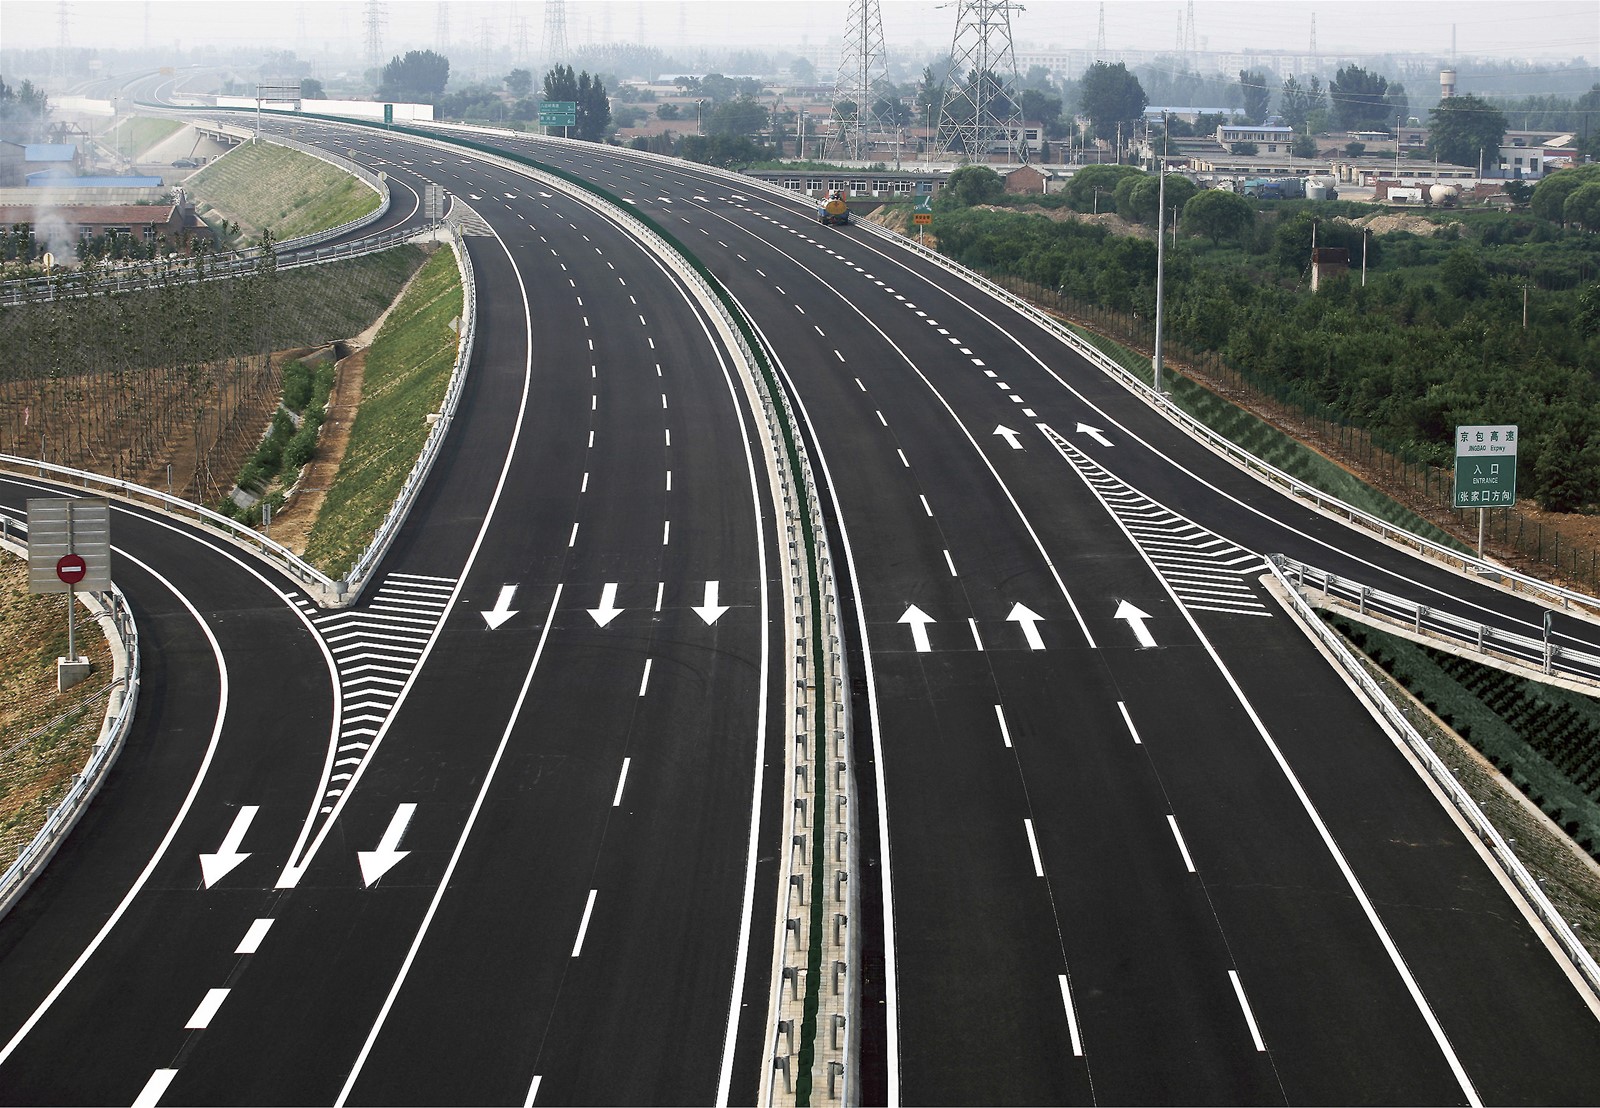 Road materials. Скоростная автомагистраль. Линии на дороге. Дорожная разметка. Скоростные автострады Японии.